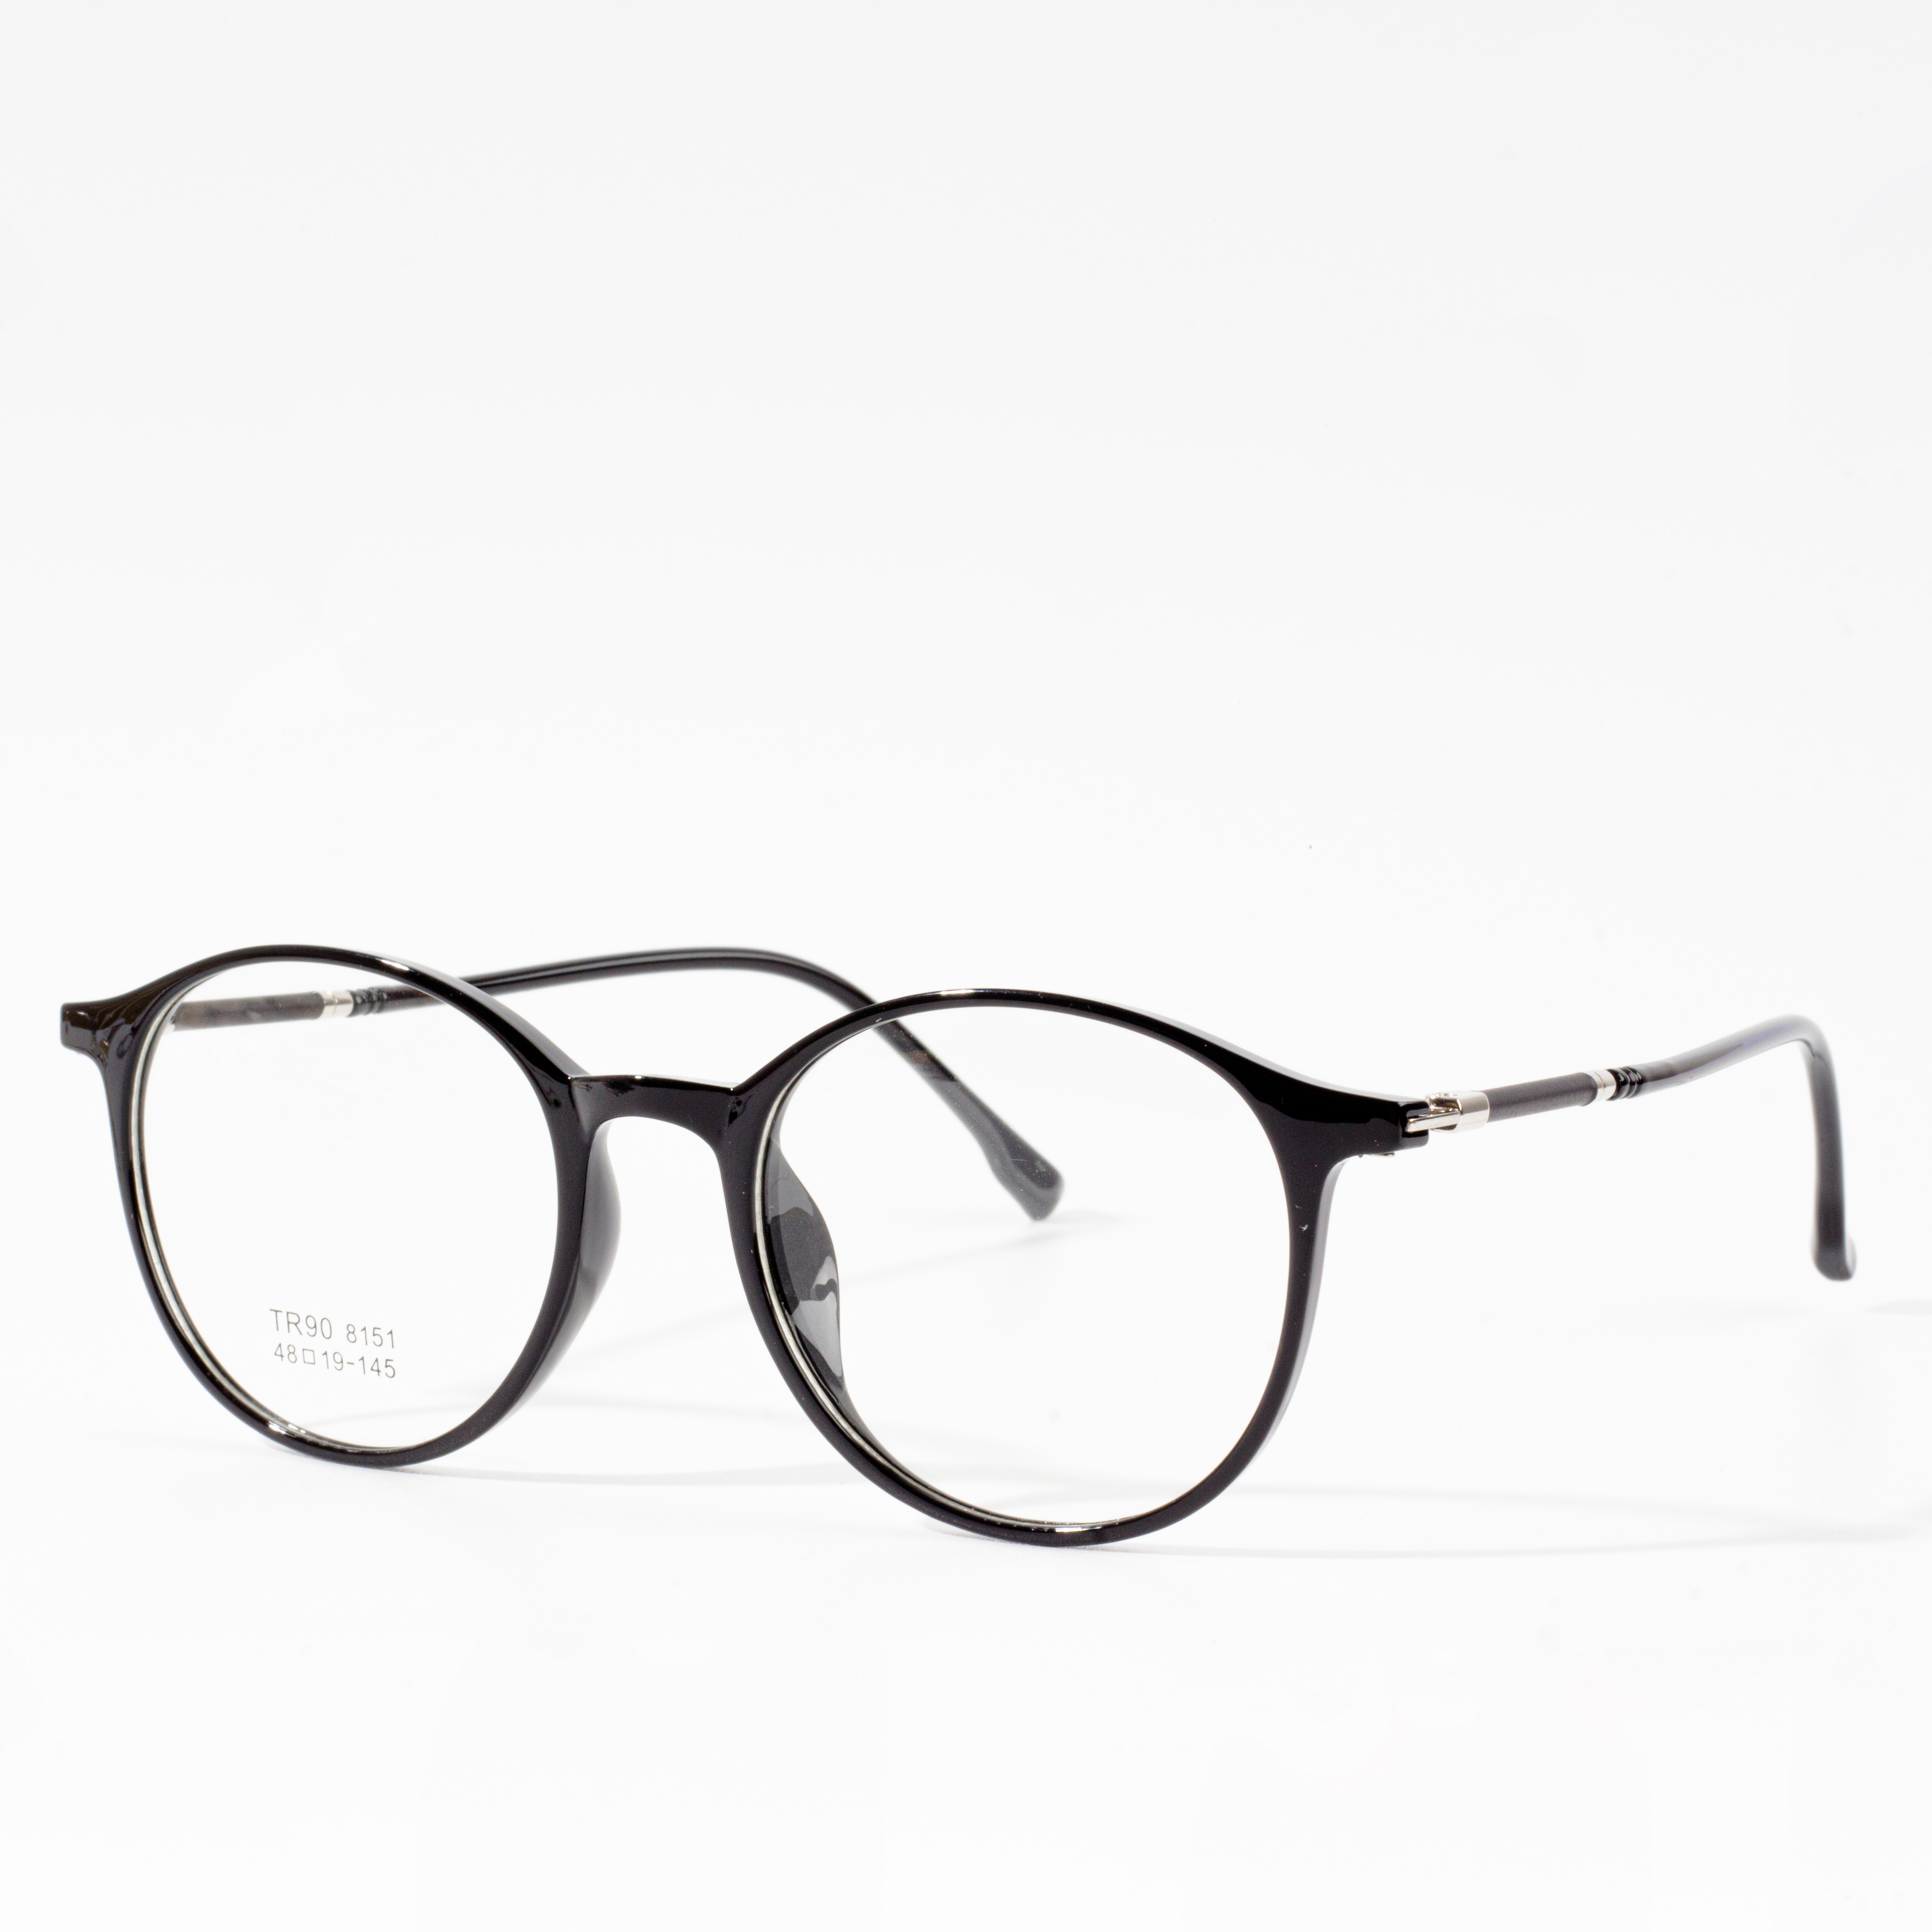 მამაკაცის და ქალის დიზაინერის ჩარჩოები - Eyeglasses.com 广告· https://www.eyeglasses.com/ (888) 896-3885 შეიძინეთ სათვალეების დიზაინერული ჩარჩოები გლობალური სათვალეების საუკეთესო ბრენდებიდან ნახევრად დაბალი საცალო ფასებით დღეს.